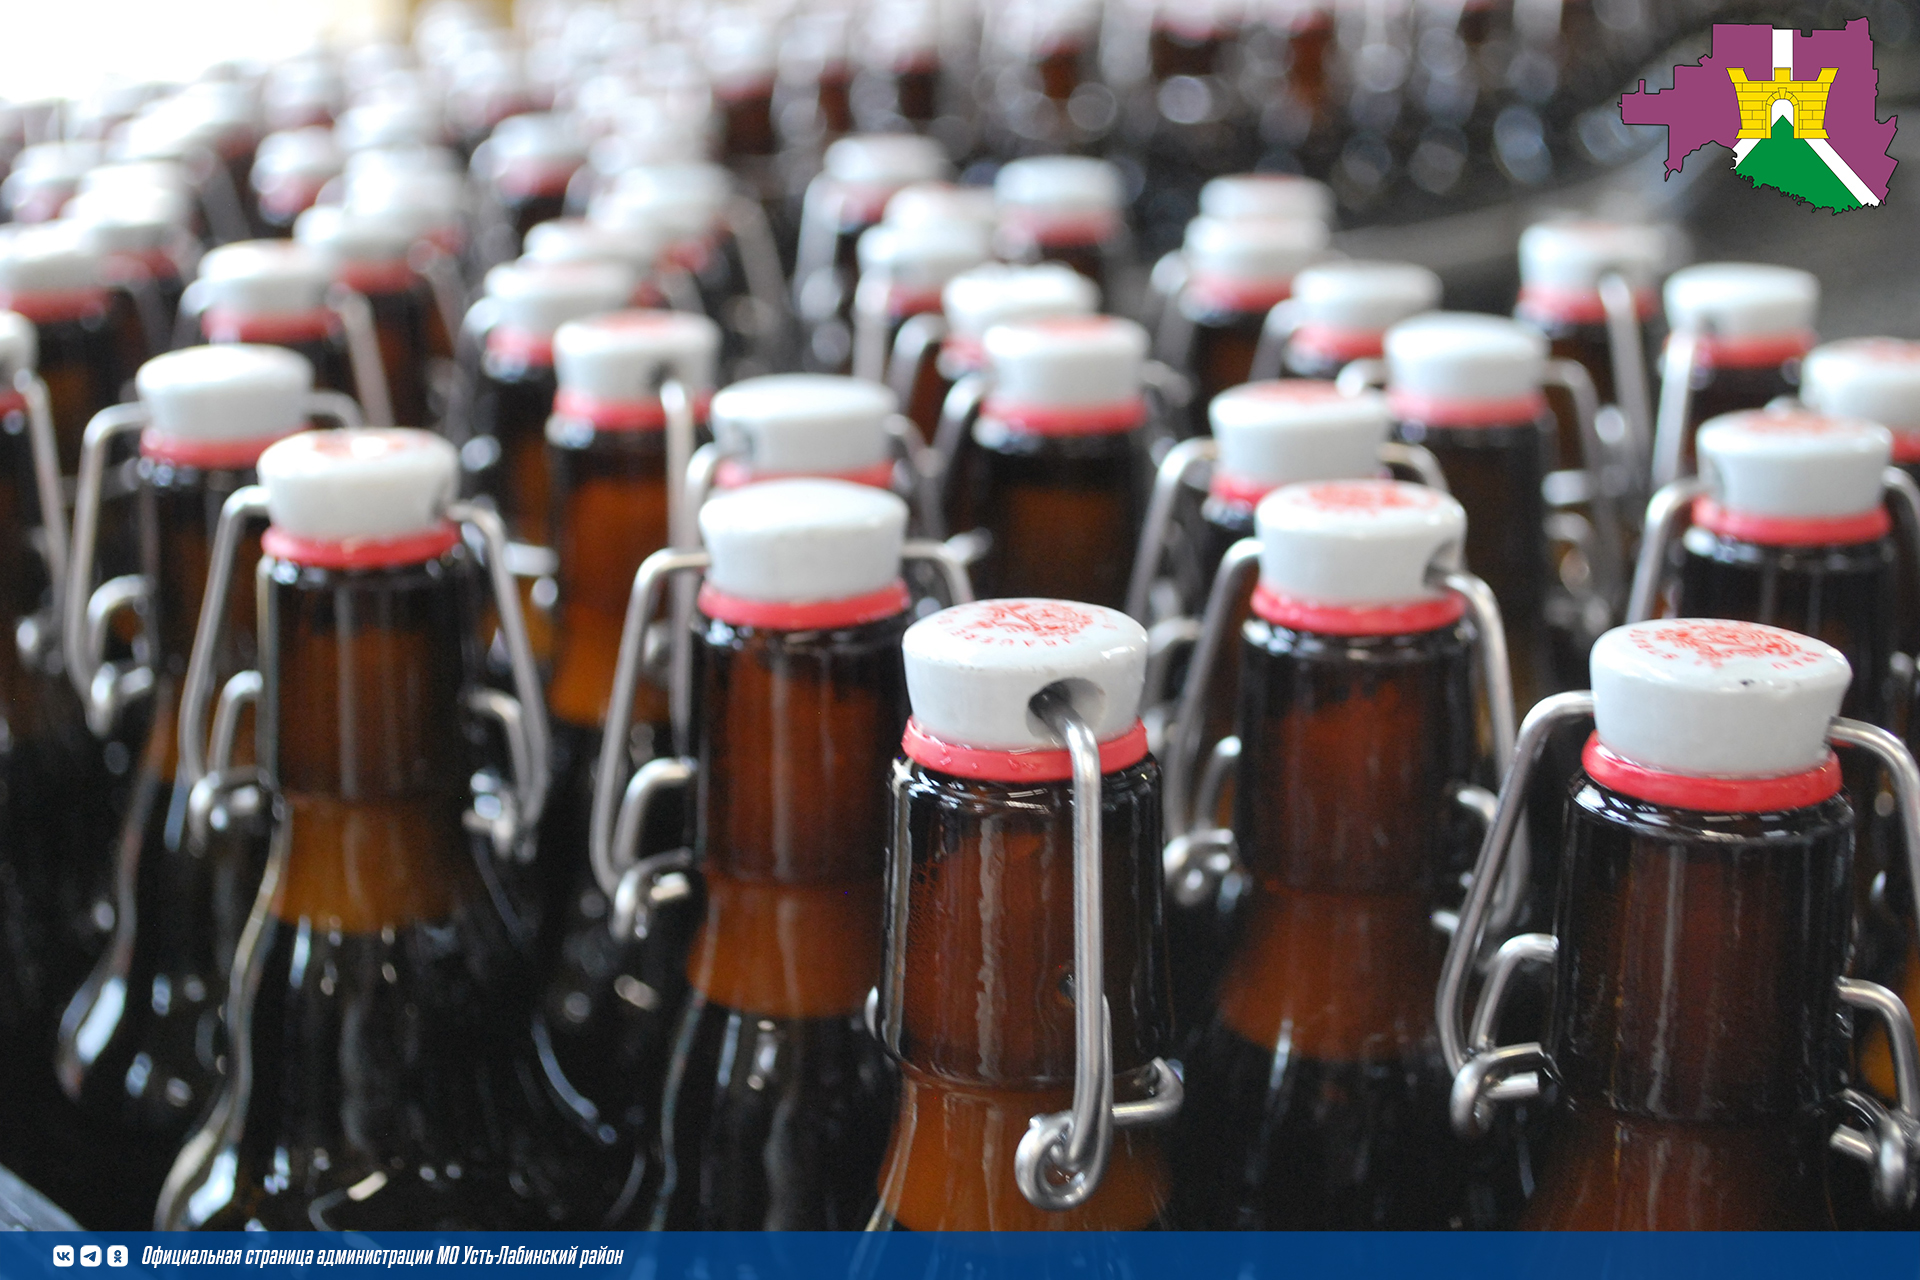 С 1 июня становится обязательным поэкземплярный вывод из оборота через контрольно-кассовую технику для пива и пивных напитков в потребительской упаковке